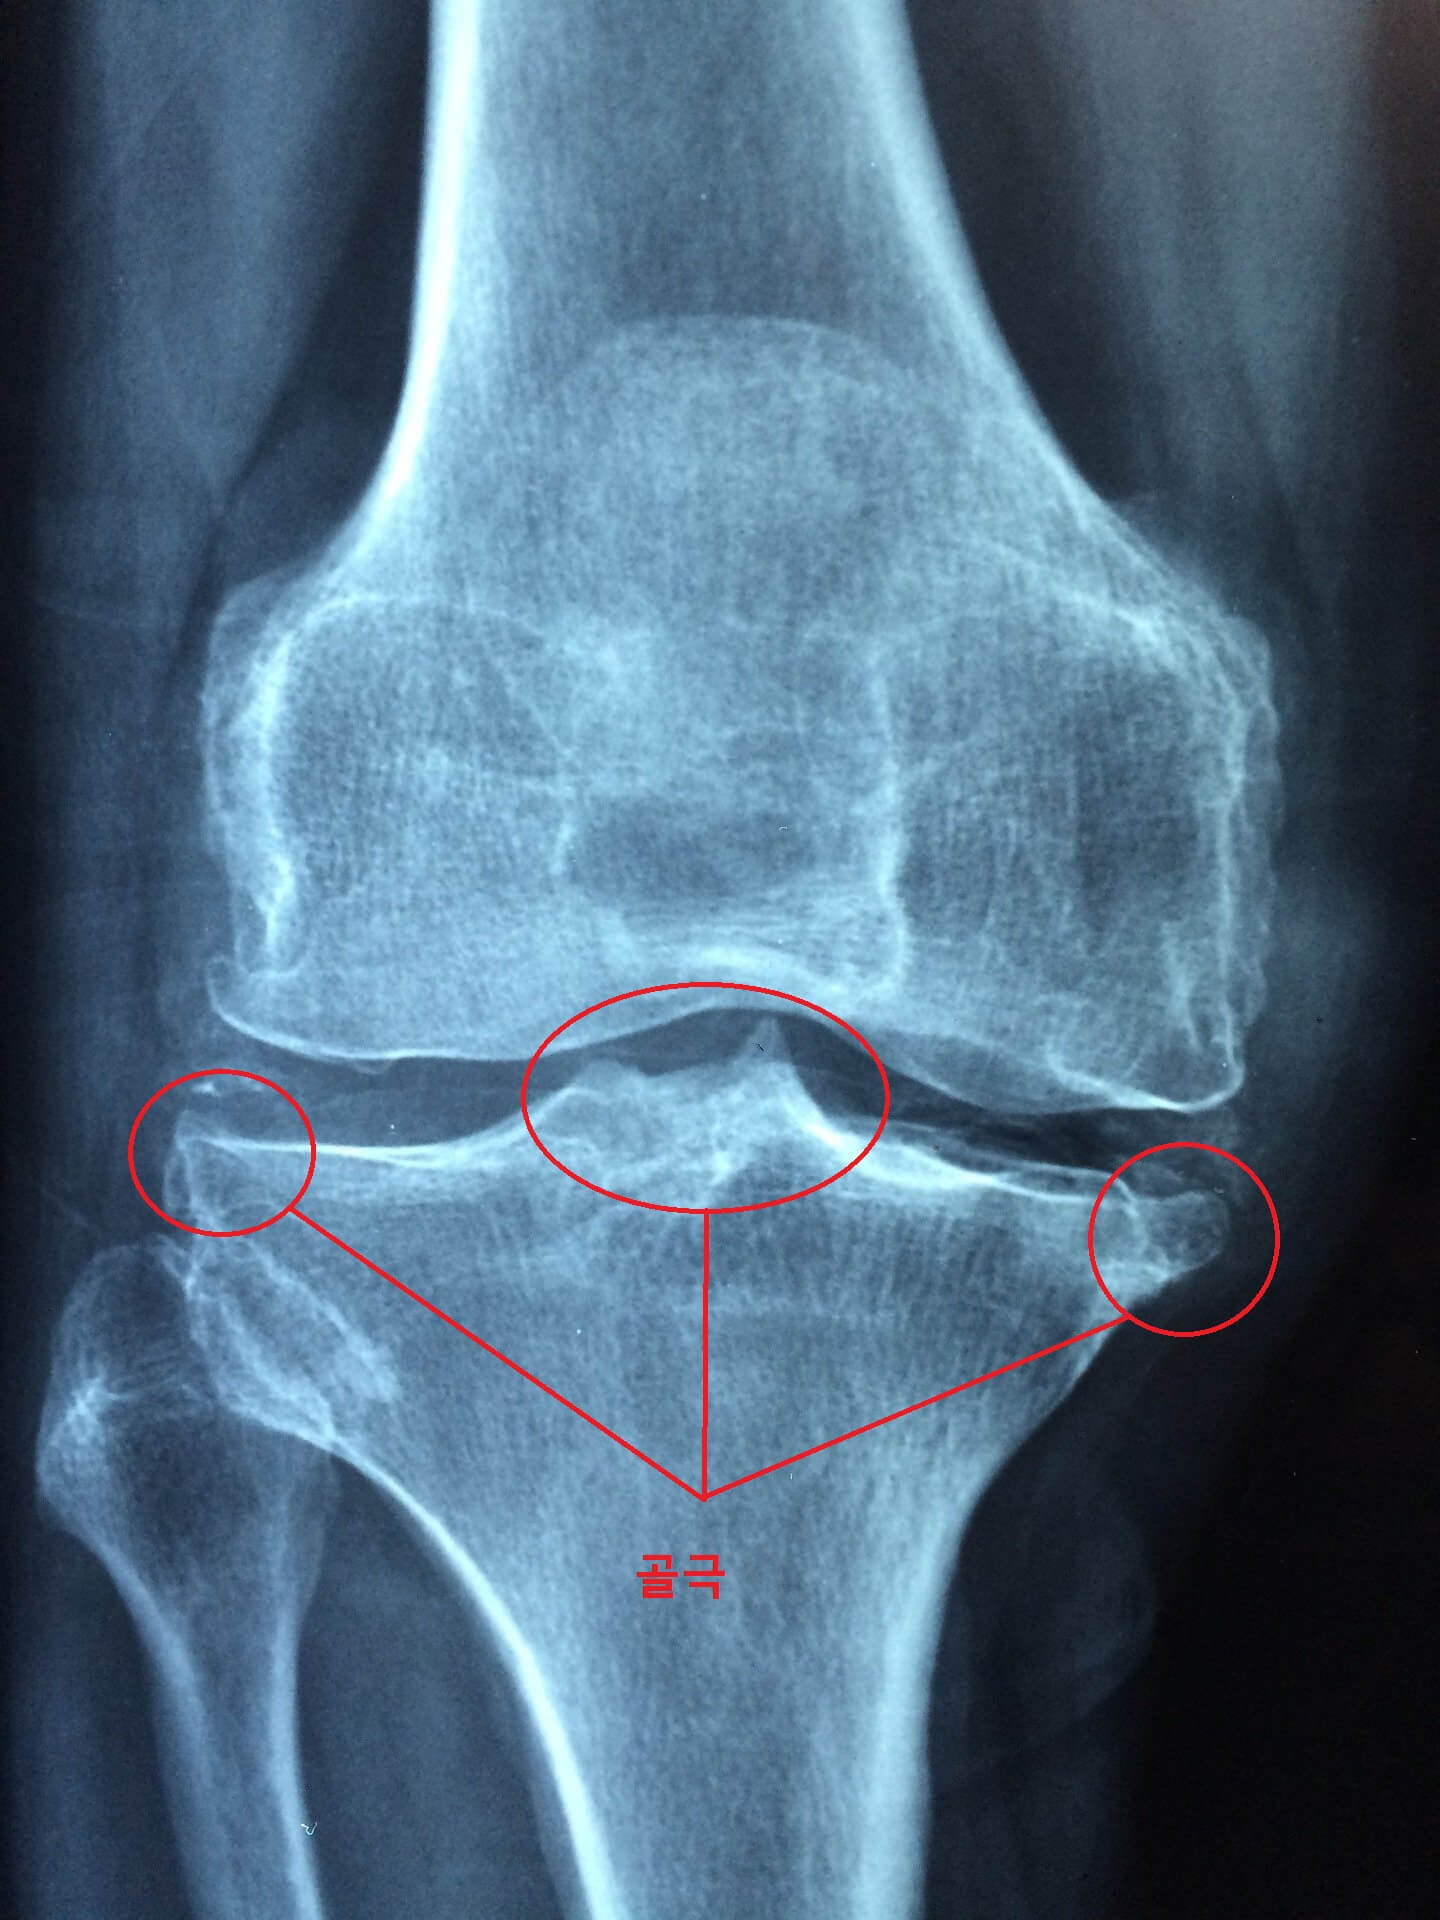 무릎에 관절염이 심해져서 골극이 생긴 것을 볼 수 있습니다. 